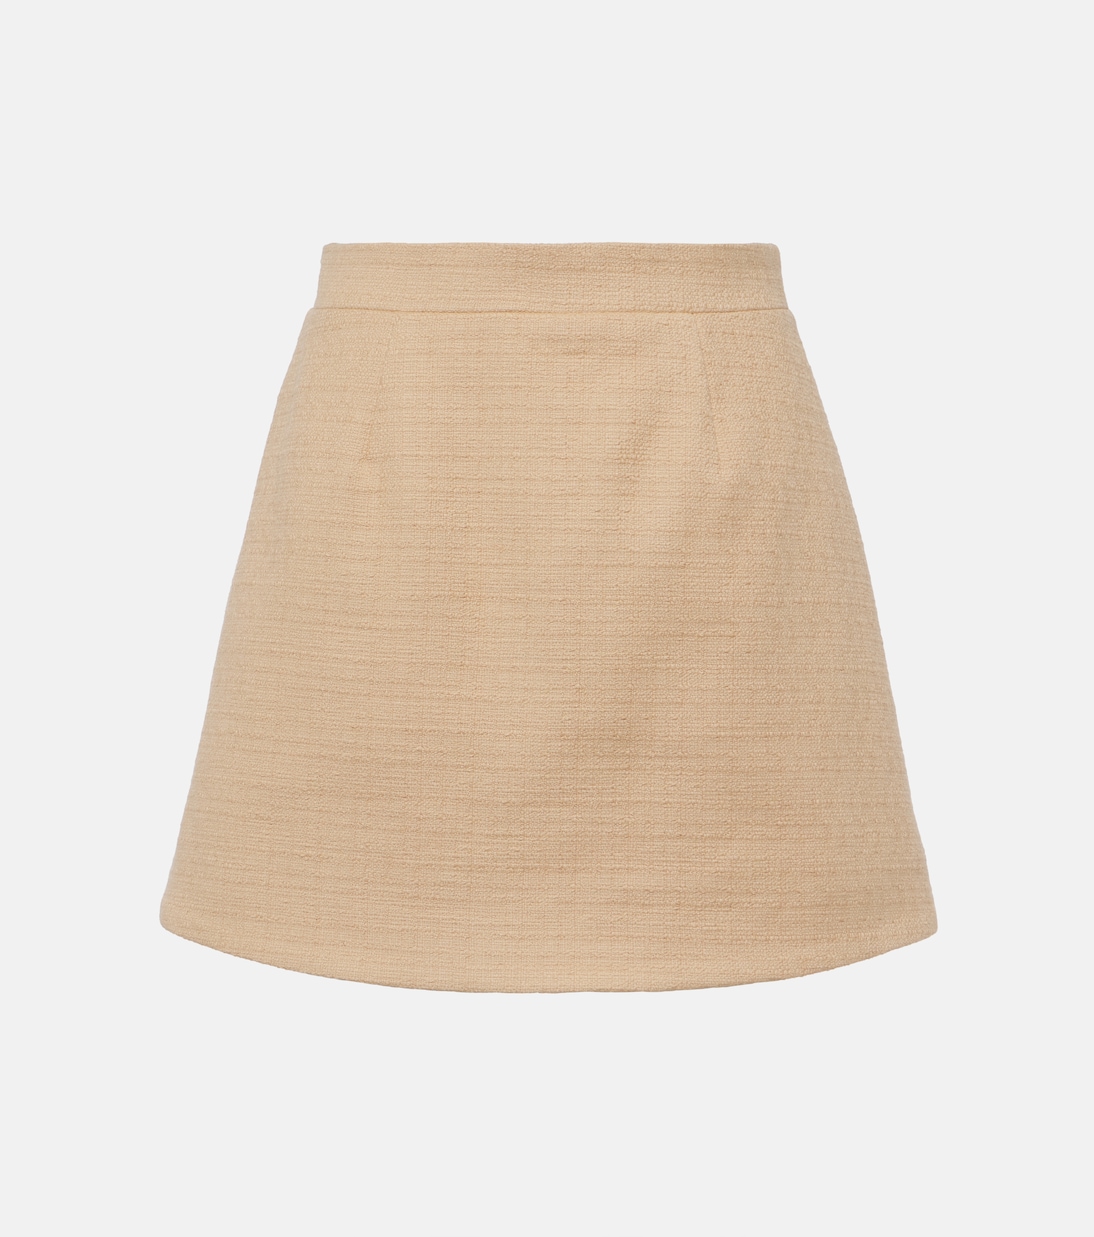 Мини-юбка из твида с высокой посадкой Patou, бежевый юбка расклешенная с высокой посадкой в полоску ayzolle s бежевый